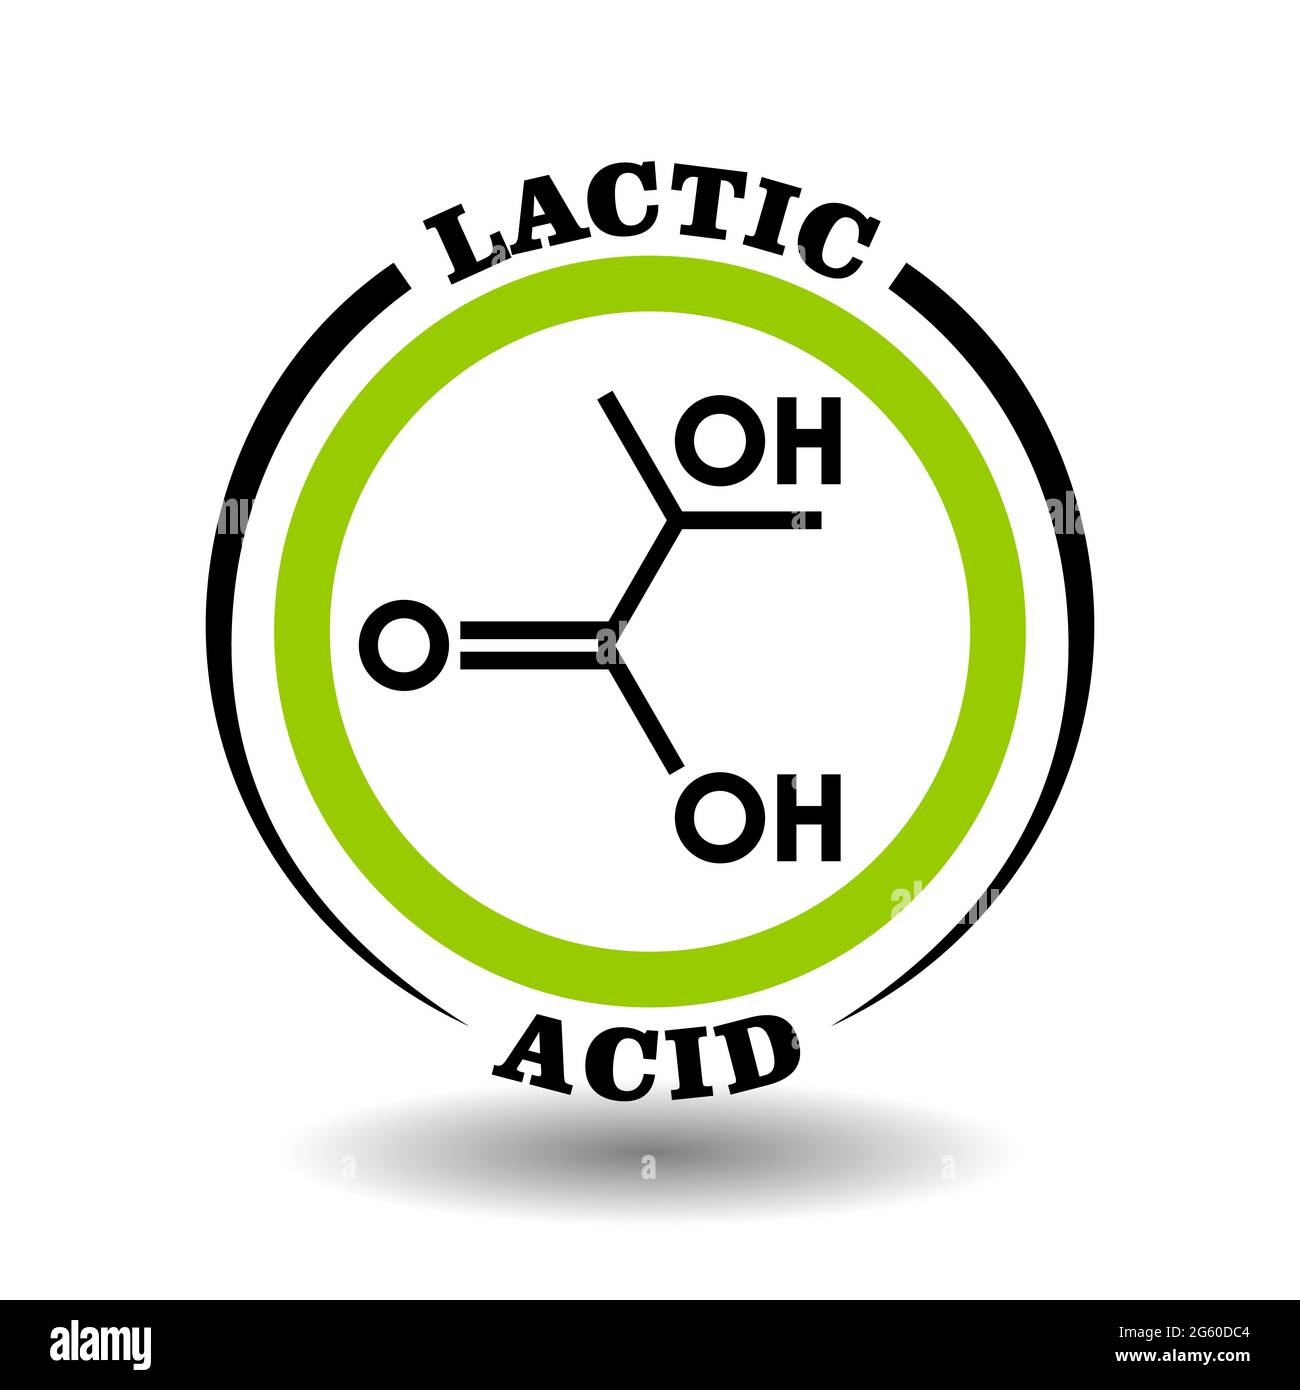 Icône vectorielle circulaire avec formule chimique de lait lactique symbole acide pour l'emballage des signes de cosmétiques, étiquettes de produits médicaux avec ingrédient de lactate Illustration de Vecteur